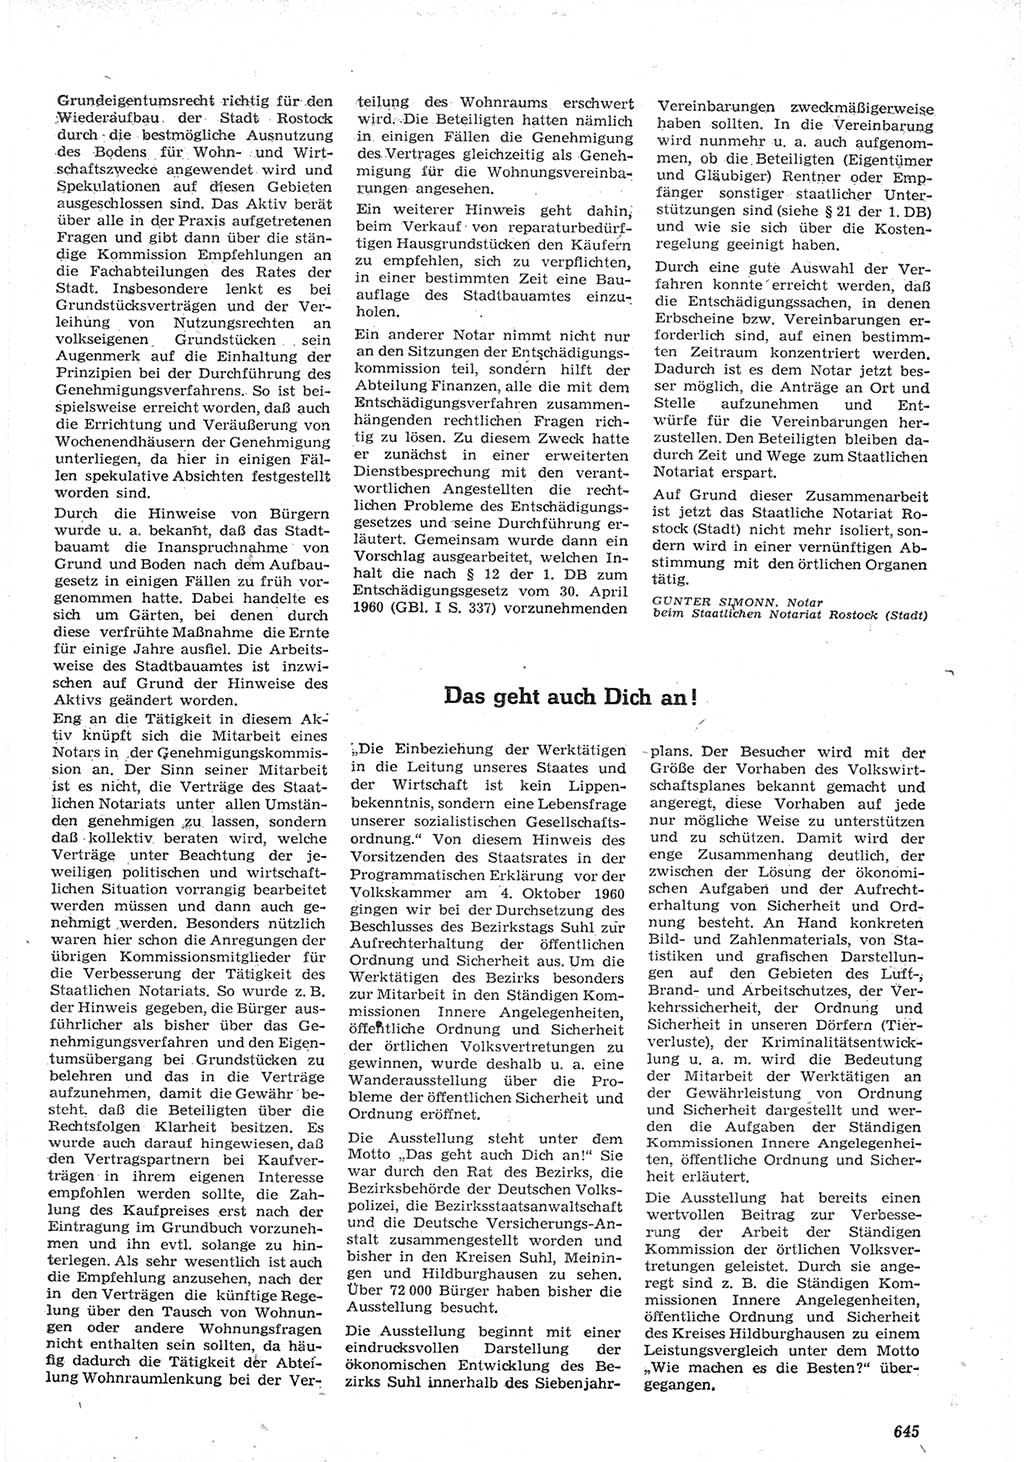 Neue Justiz (NJ), Zeitschrift für Recht und Rechtswissenschaft [Deutsche Demokratische Republik (DDR)], 15. Jahrgang 1961, Seite 645 (NJ DDR 1961, S. 645)